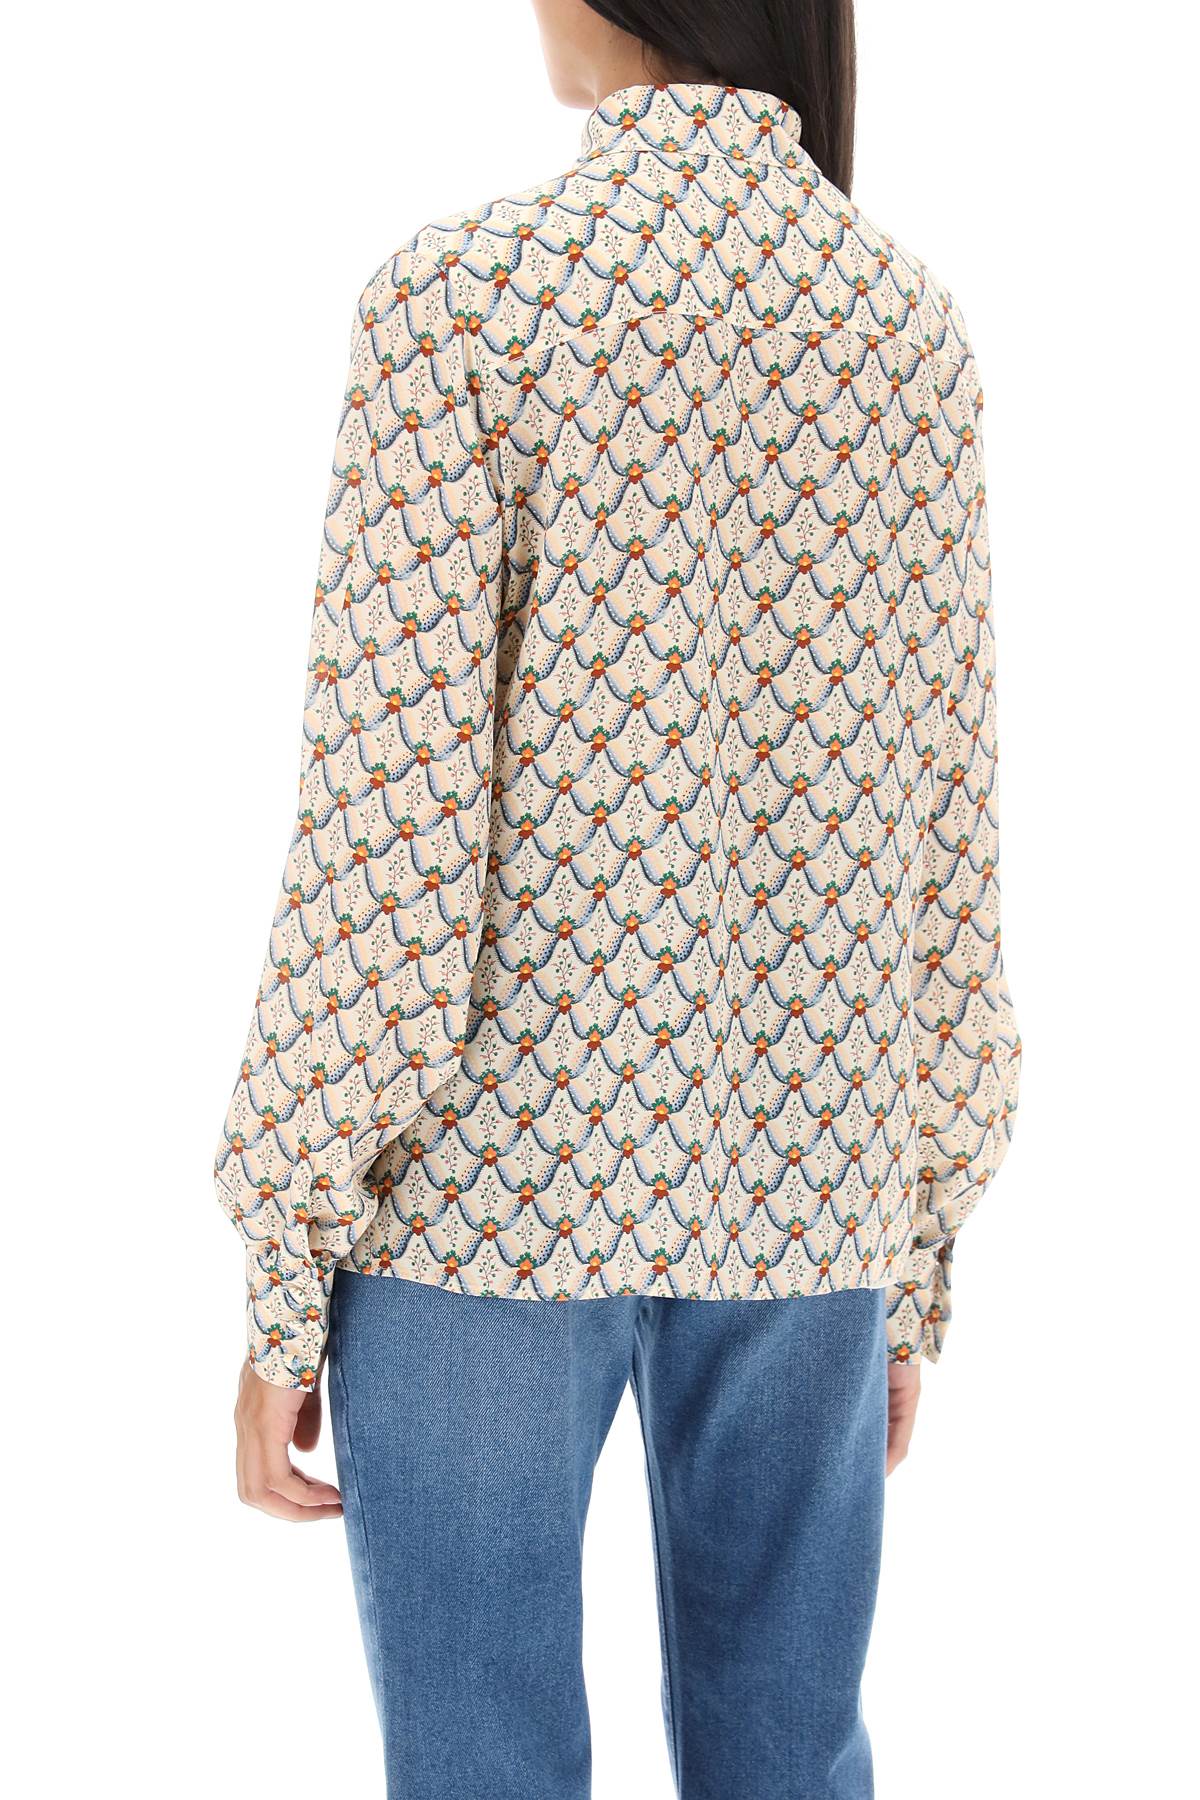 Etro crepe de chine shirt with floralia motif-2